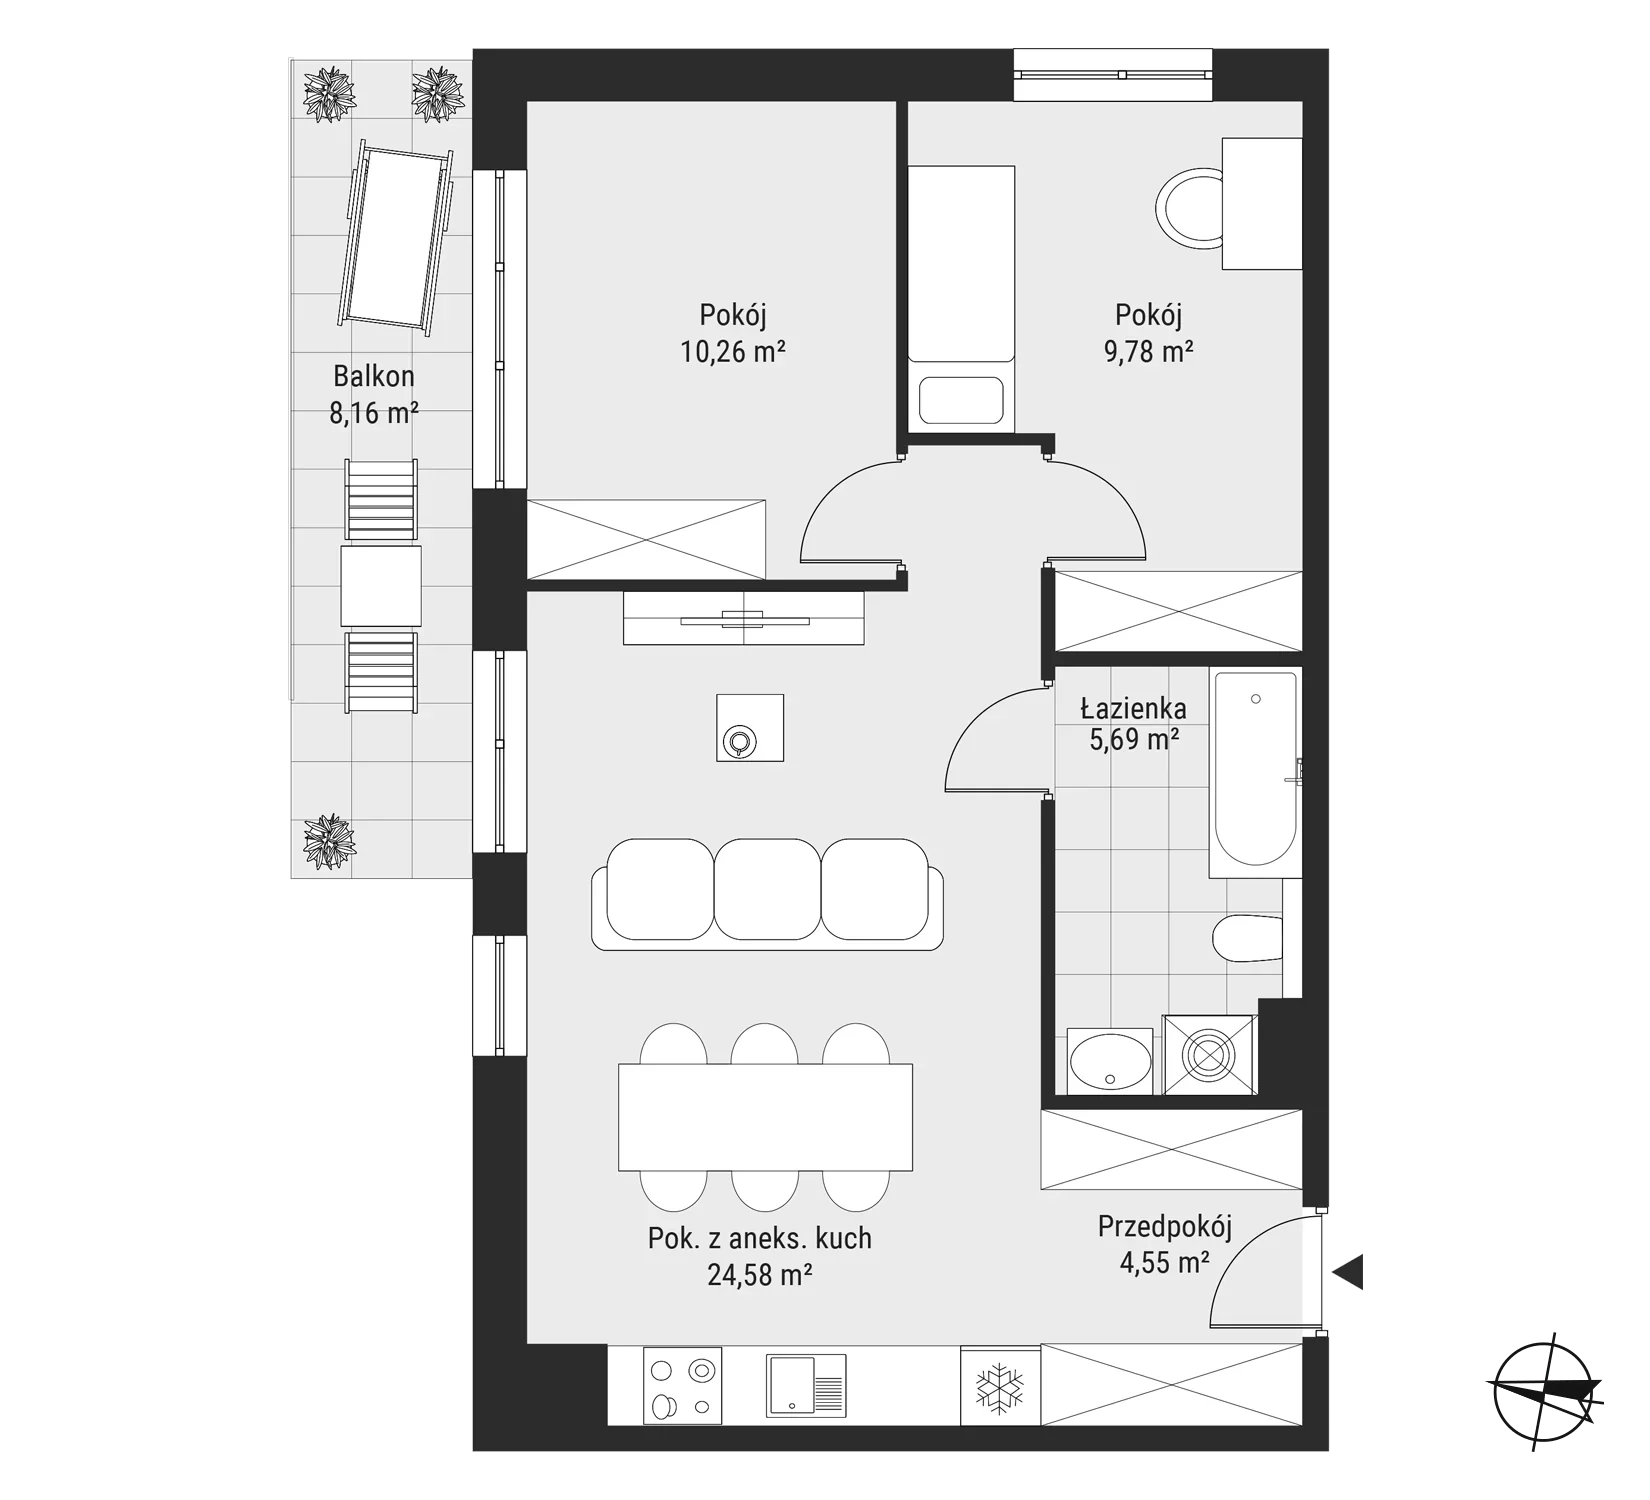 Mieszkanie 54,86 m², piętro 2, oferta nr mieszkanie 23, Bytkowska 3.0, Katowice, Wełnowiec-Józefowiec, ul. Bytkowska